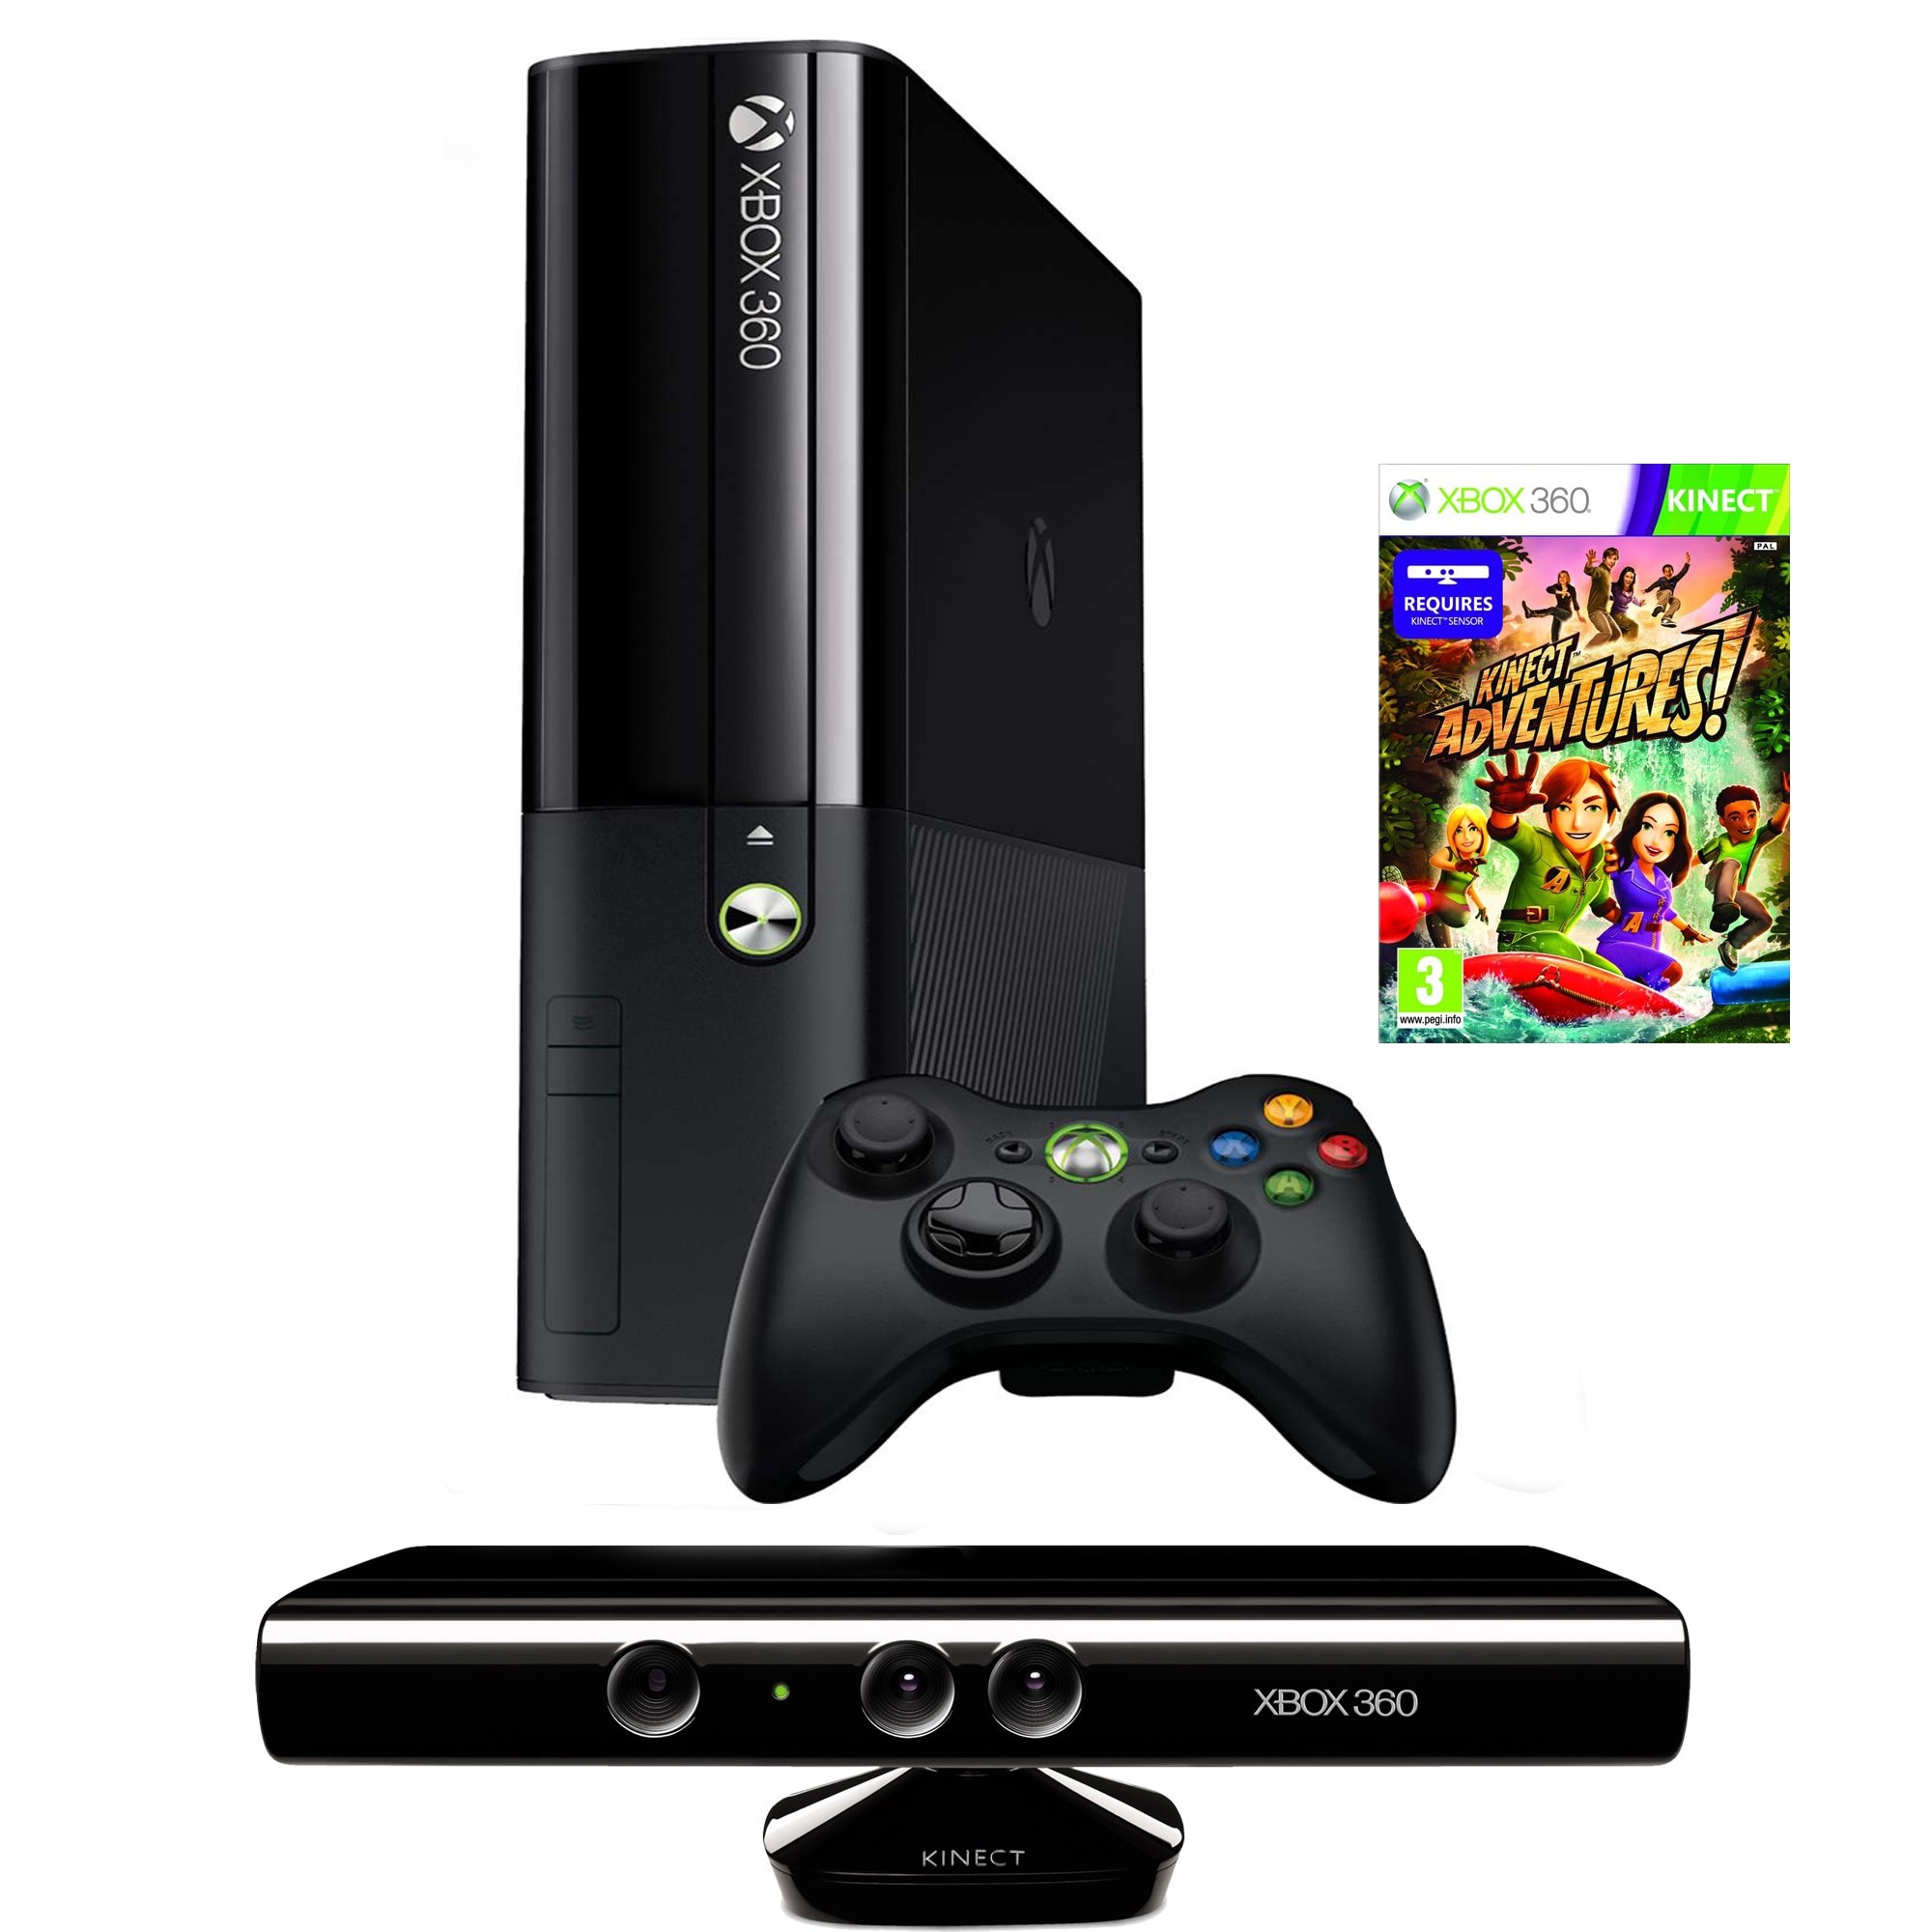 Хбокс купить в москве. Хбокс 360. Игровая приставка Xbox 360. Иксбокс 360 фрибут. Xbox 360 250gb Kinect.